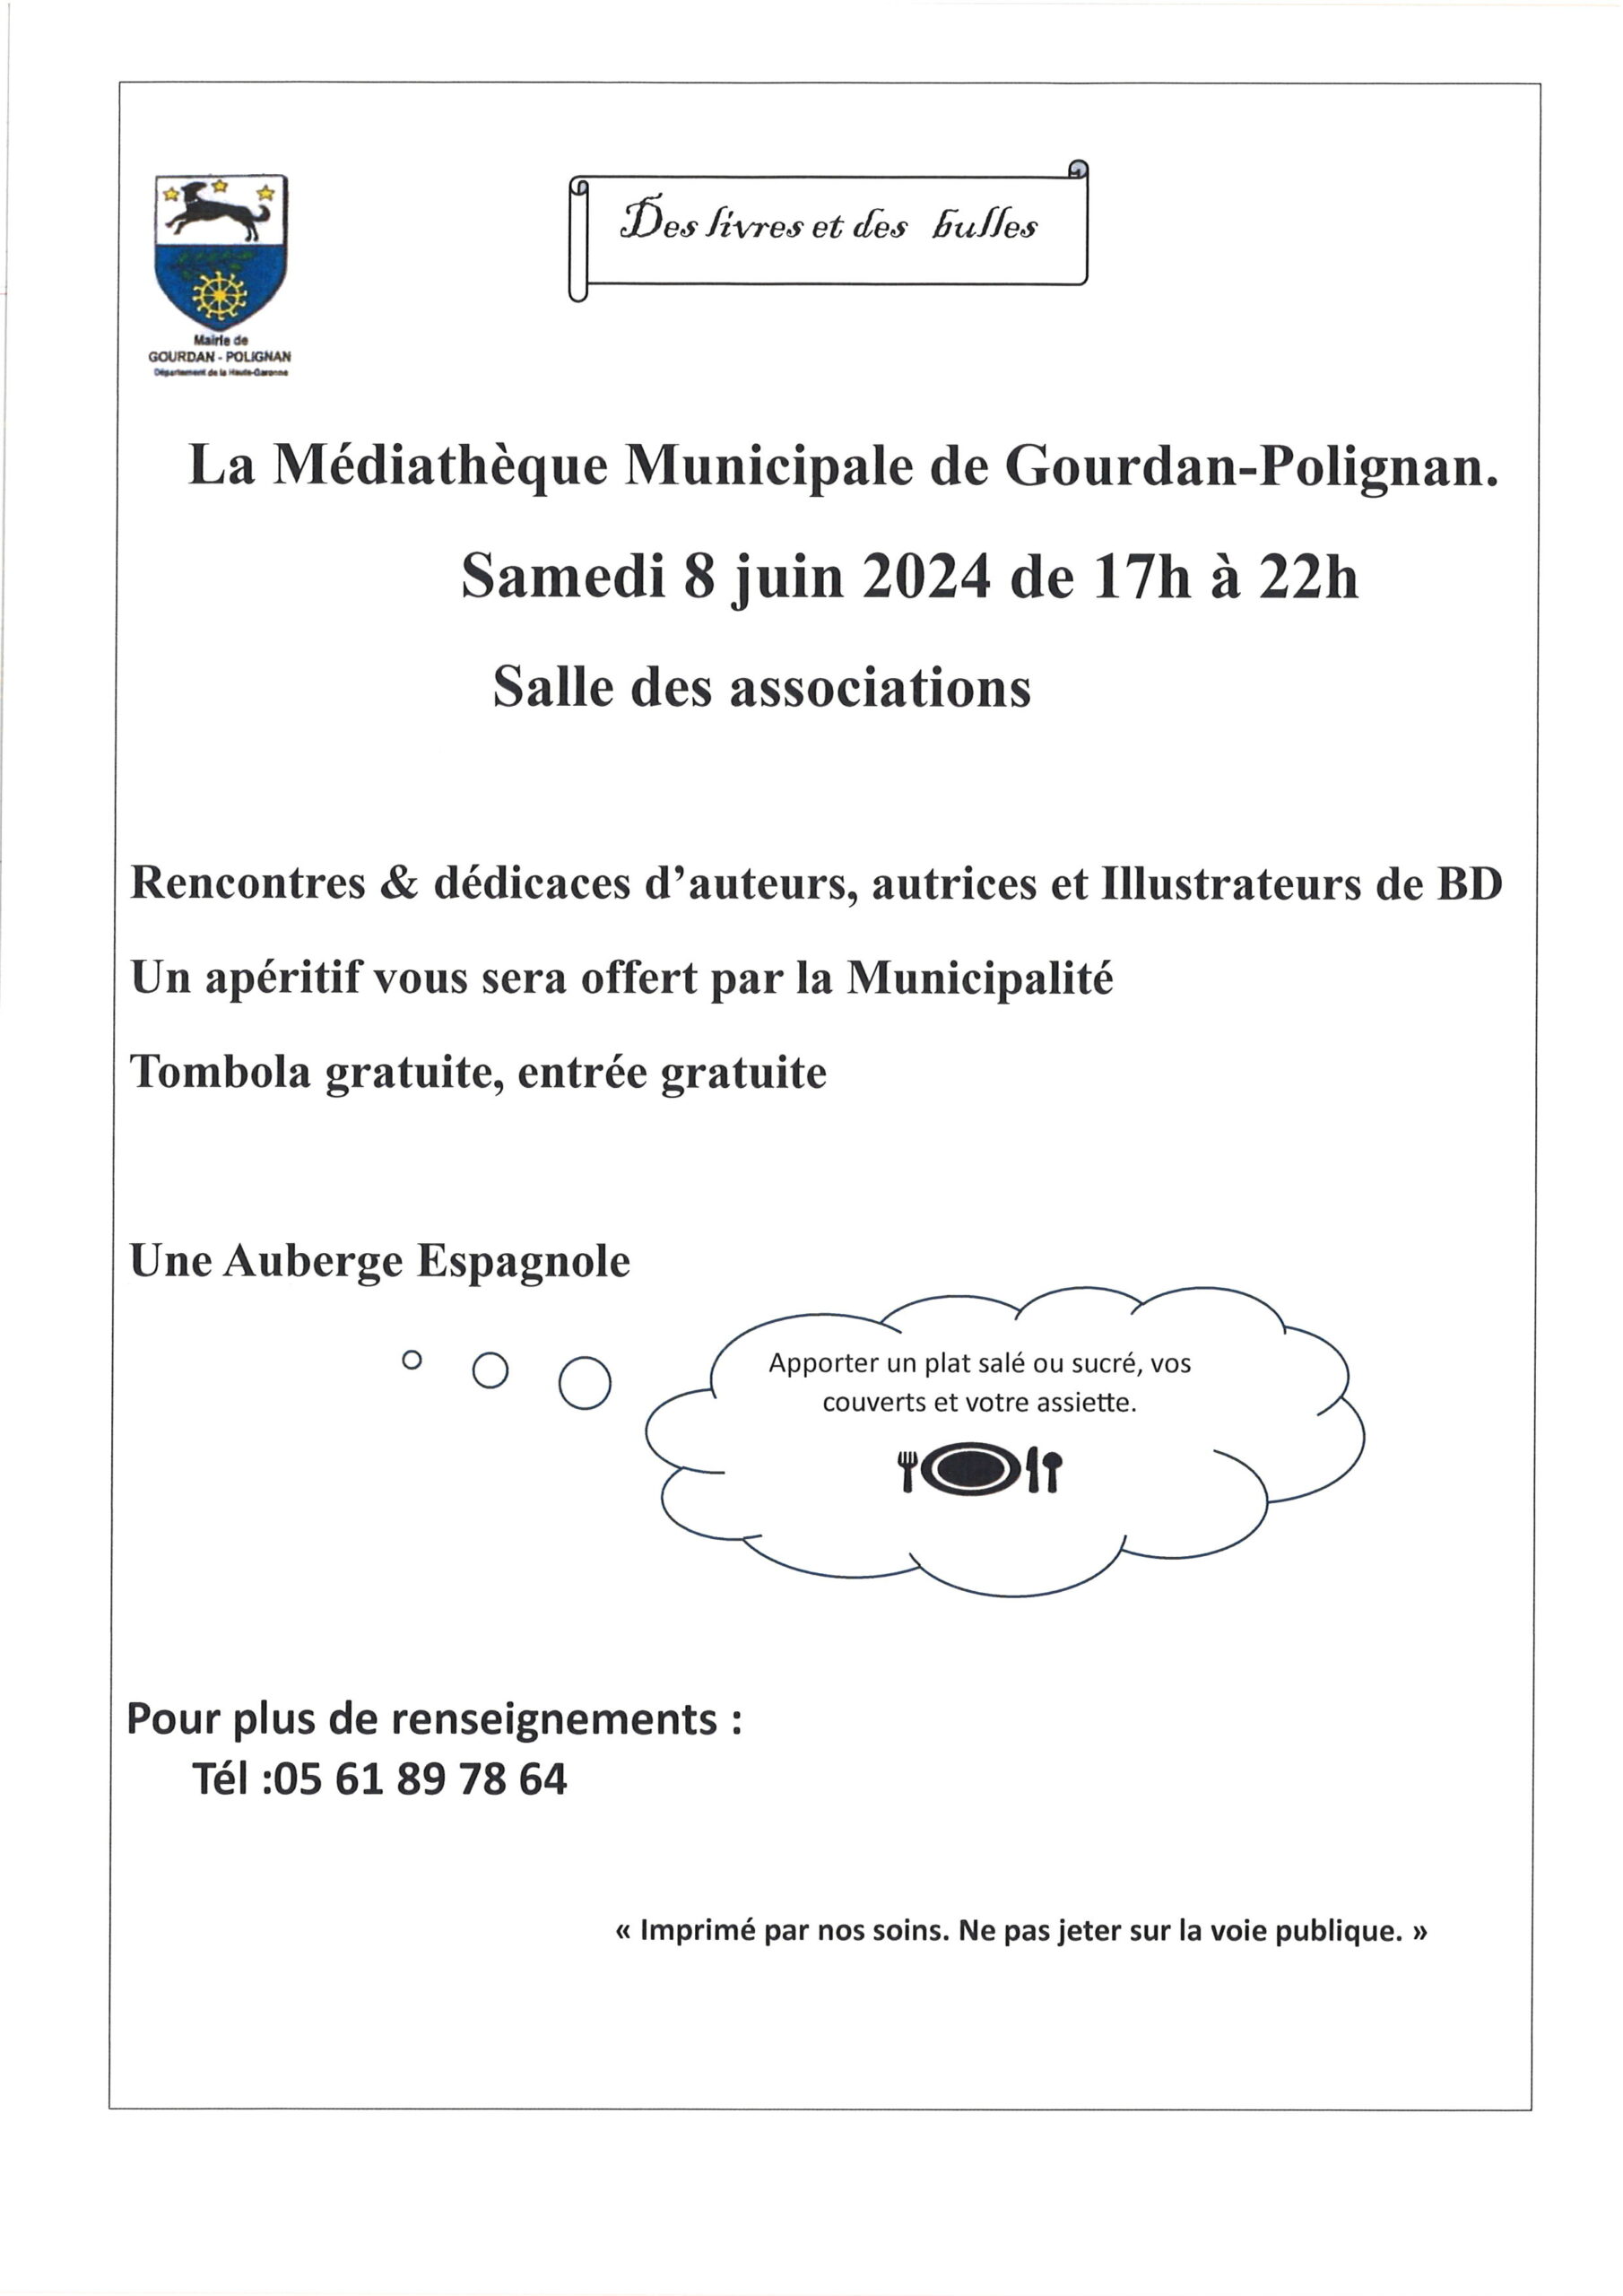 Des livres et des bulles le 8 juin 2024 à la médiathèque de Gourdan-Polignan